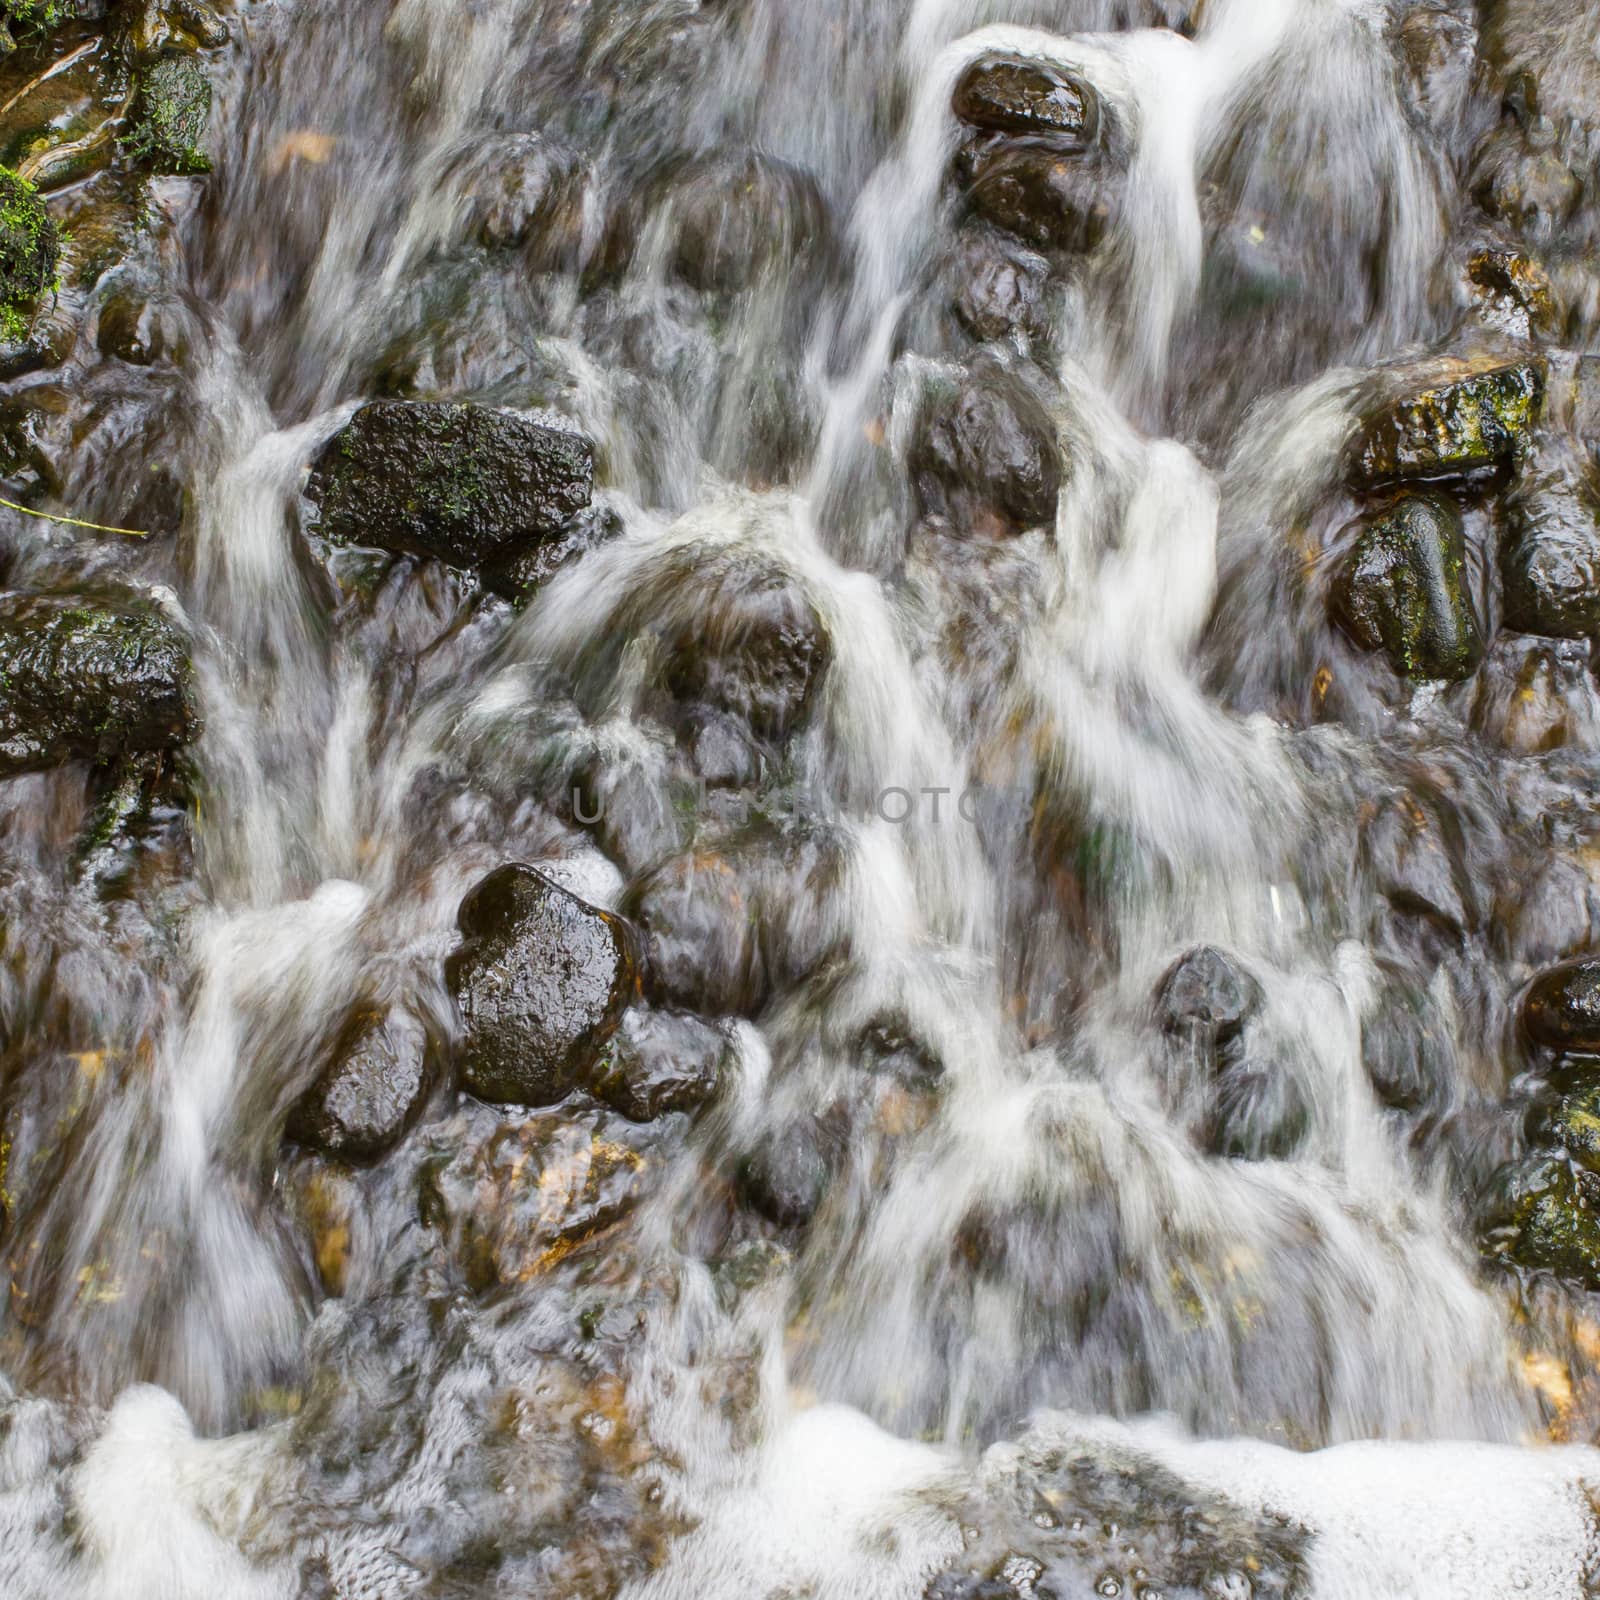 Water flowing over stones by michaklootwijk